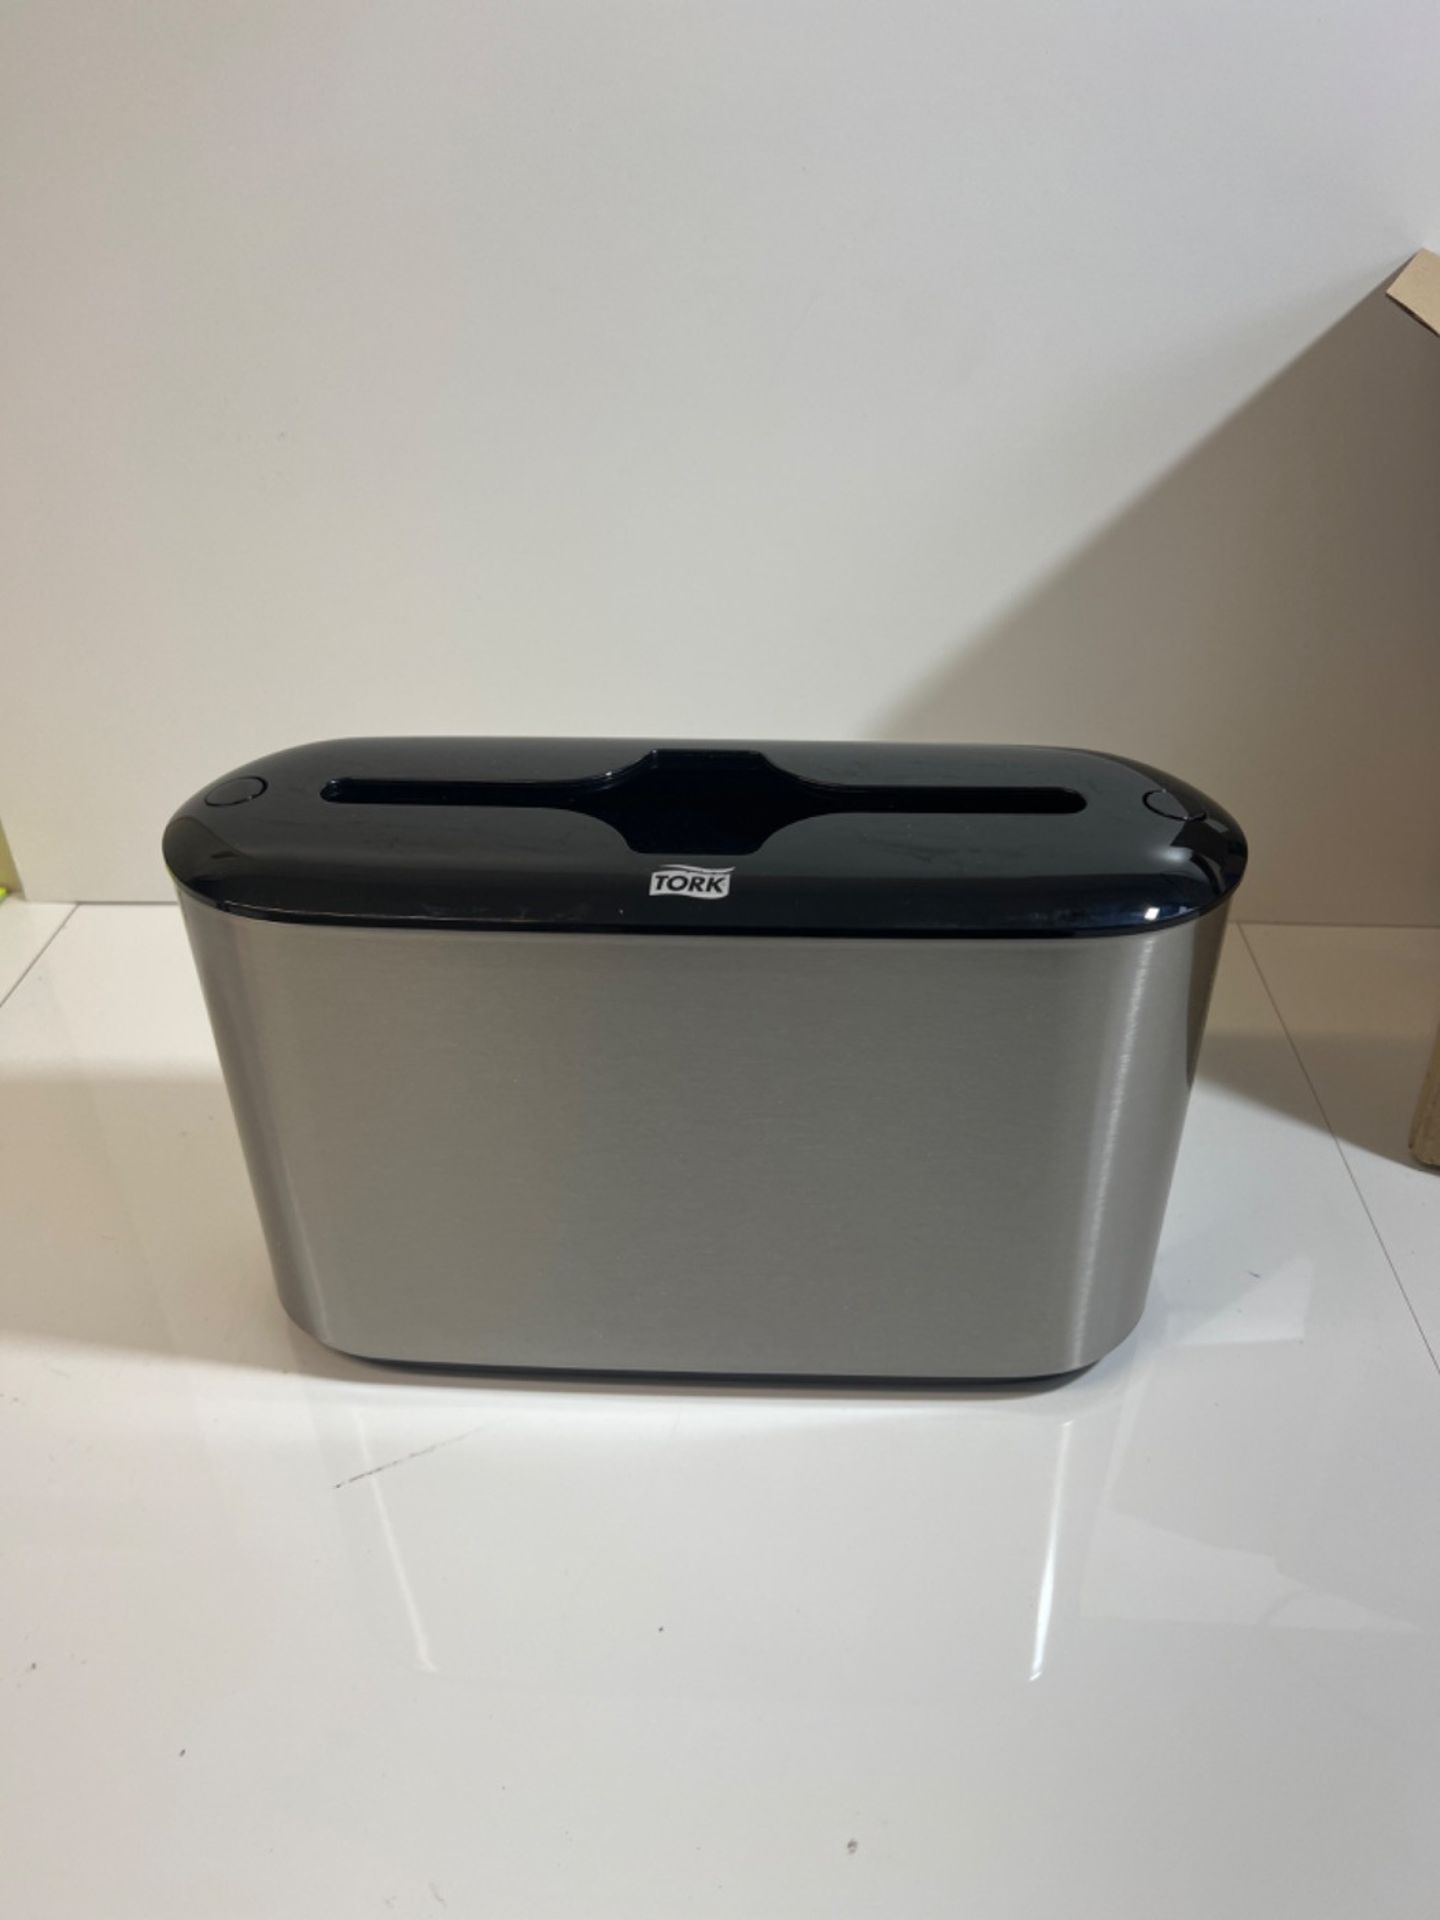 Tork Xpress Countertop Multifold Hand Towel Dispenser 460005, Image Design - H2 Paper Towel Dispens - Image 2 of 3